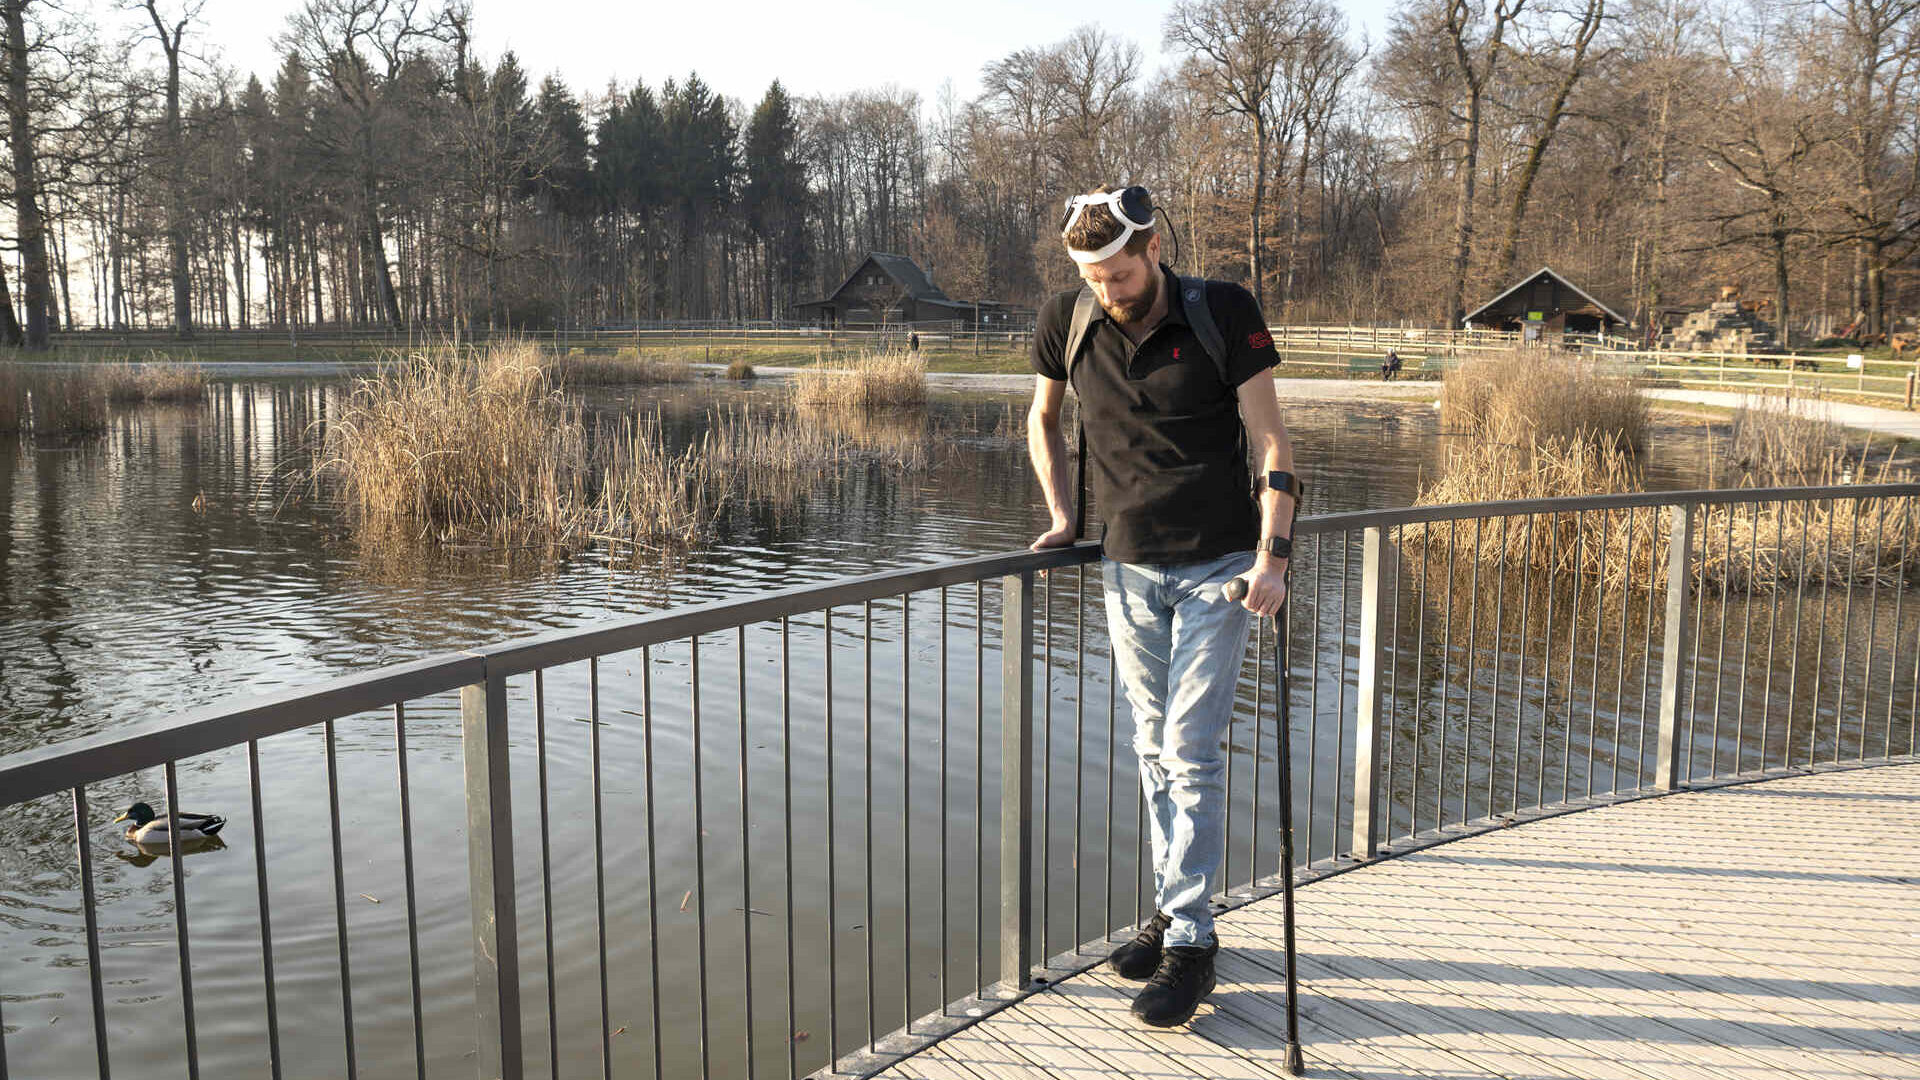 Camminare grazie al pensiero: Gert-Jan Oskam, rimasto paralizzato agli arti inferiori in seguito a un incidente in bicicletta, ha ripreso a camminare grazie a un ponte digitale fra cervello e midollo spinale